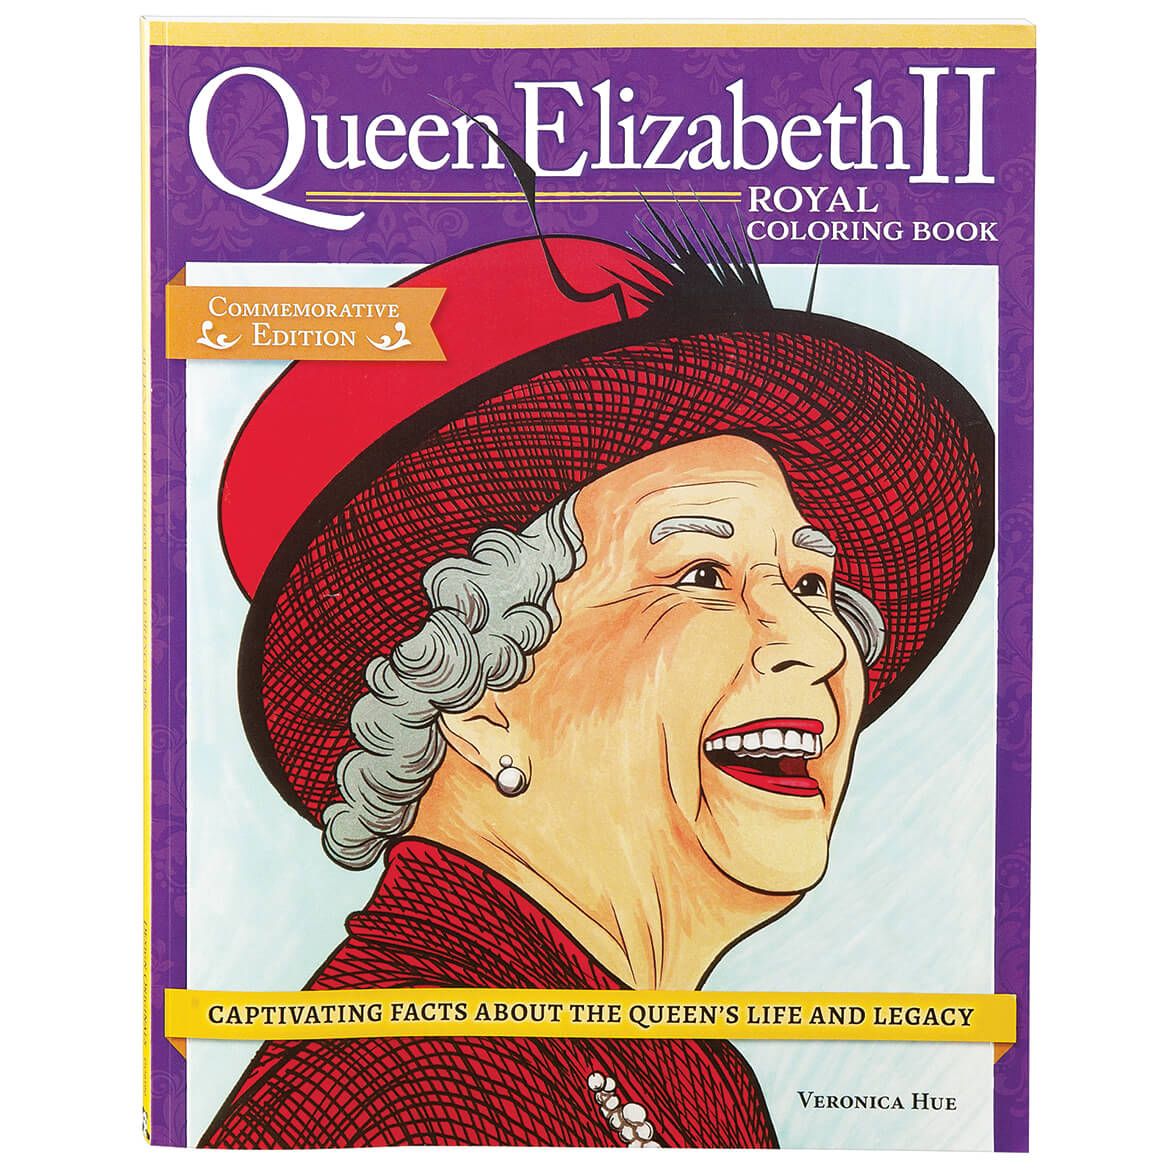 Queen Elizabeth II Royal Coloring Book + '-' + 376399